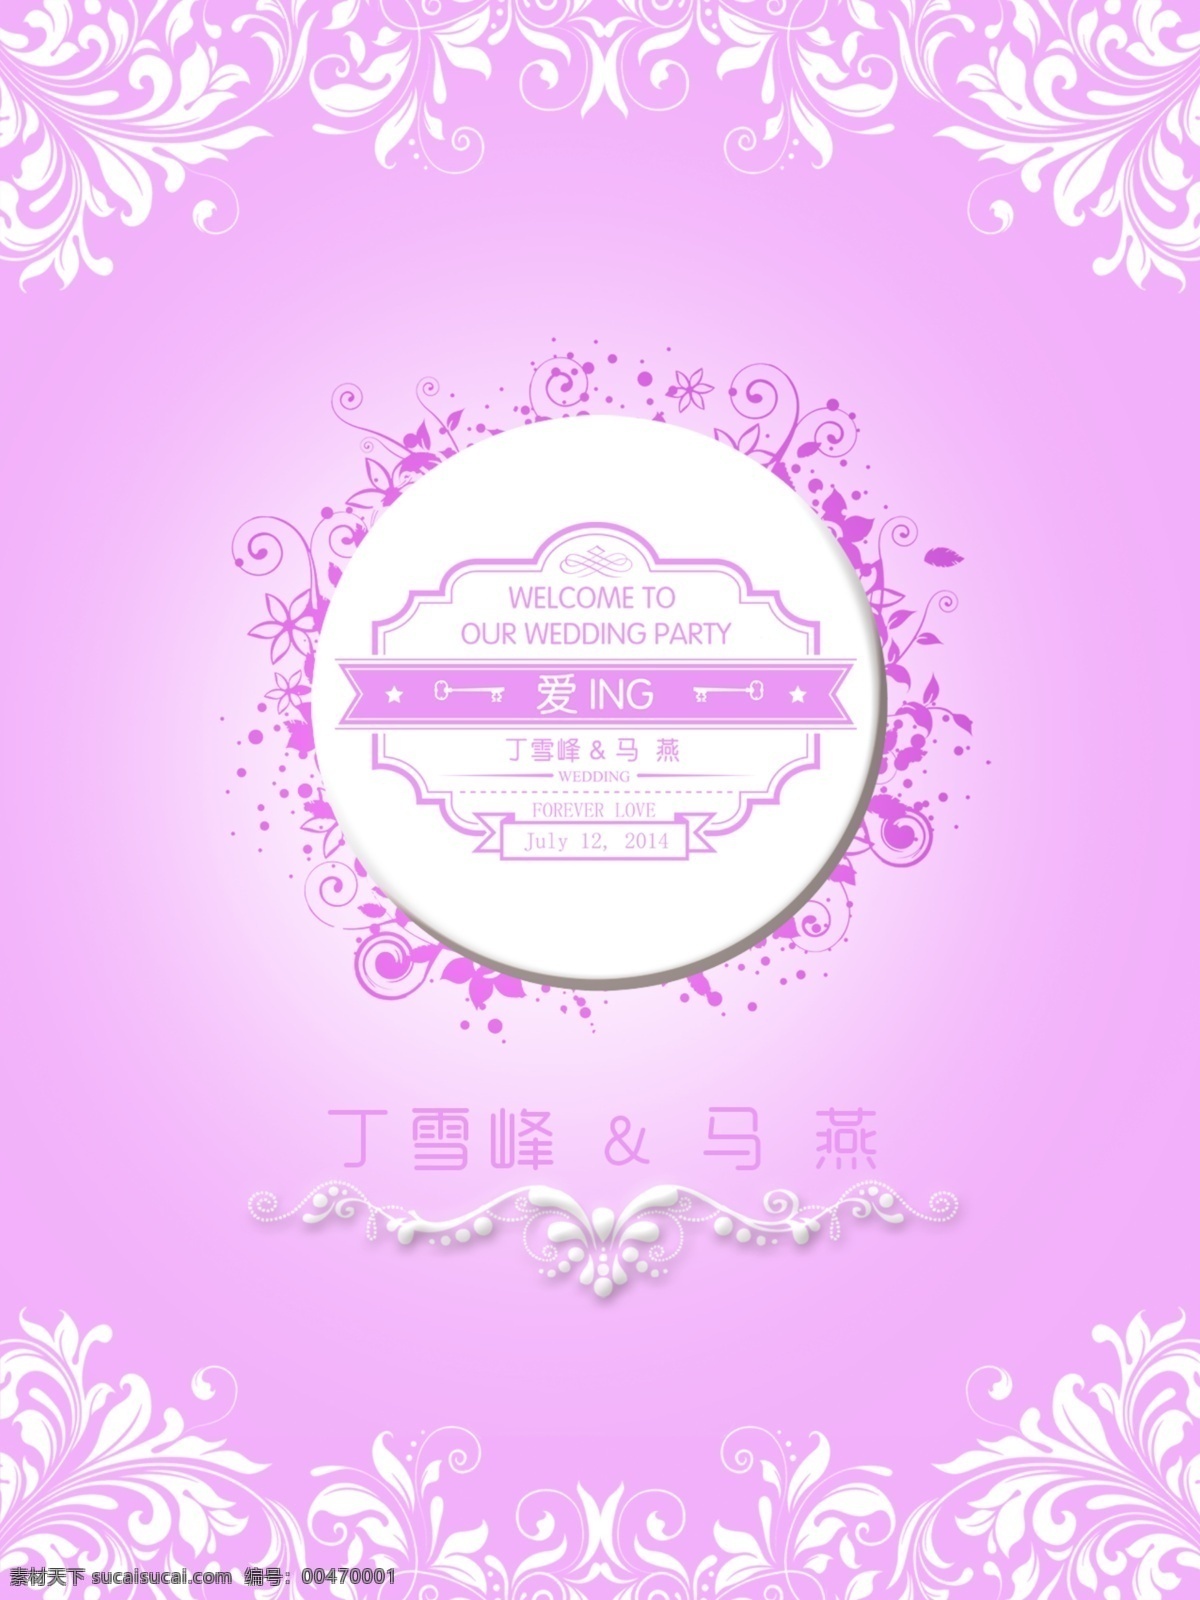 粉色 漂亮 迎宾 牌 模版下载 迎宾牌 婚礼 婚礼素材 结婚 logo 婚庆迎宾牌 紫色